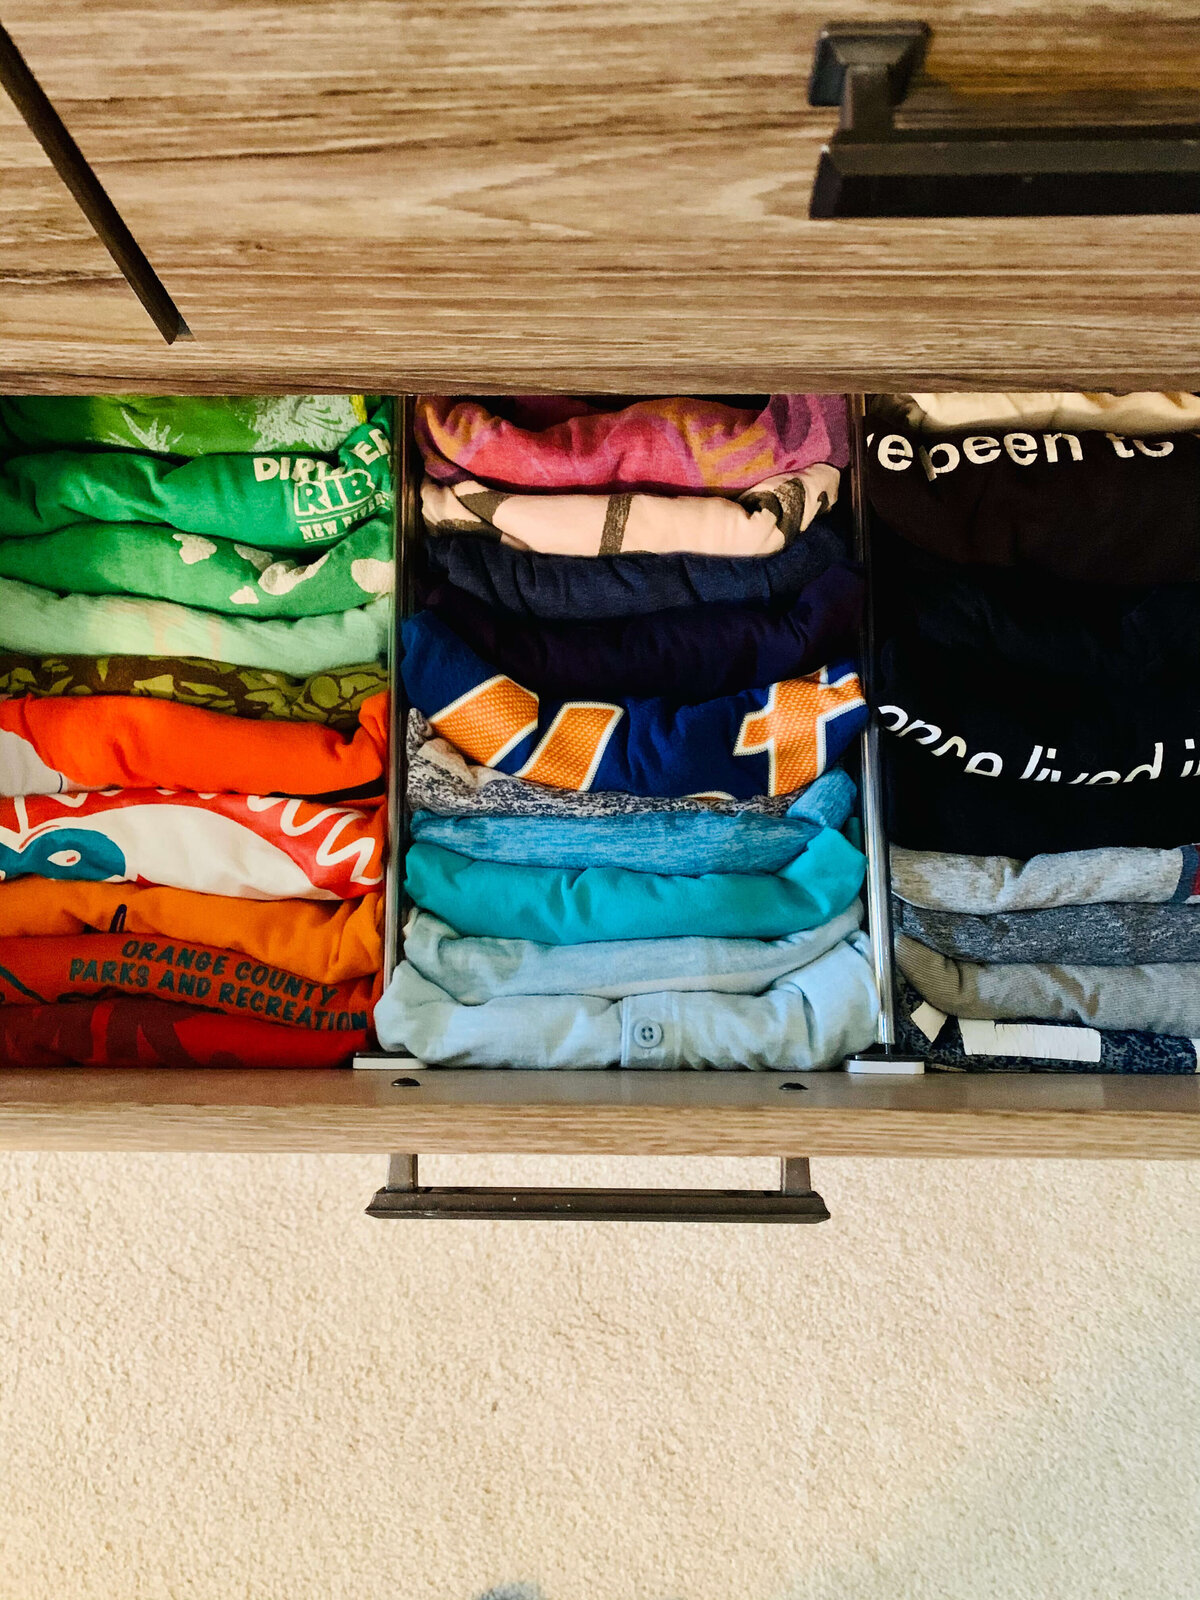 Dresser-drawer-organization